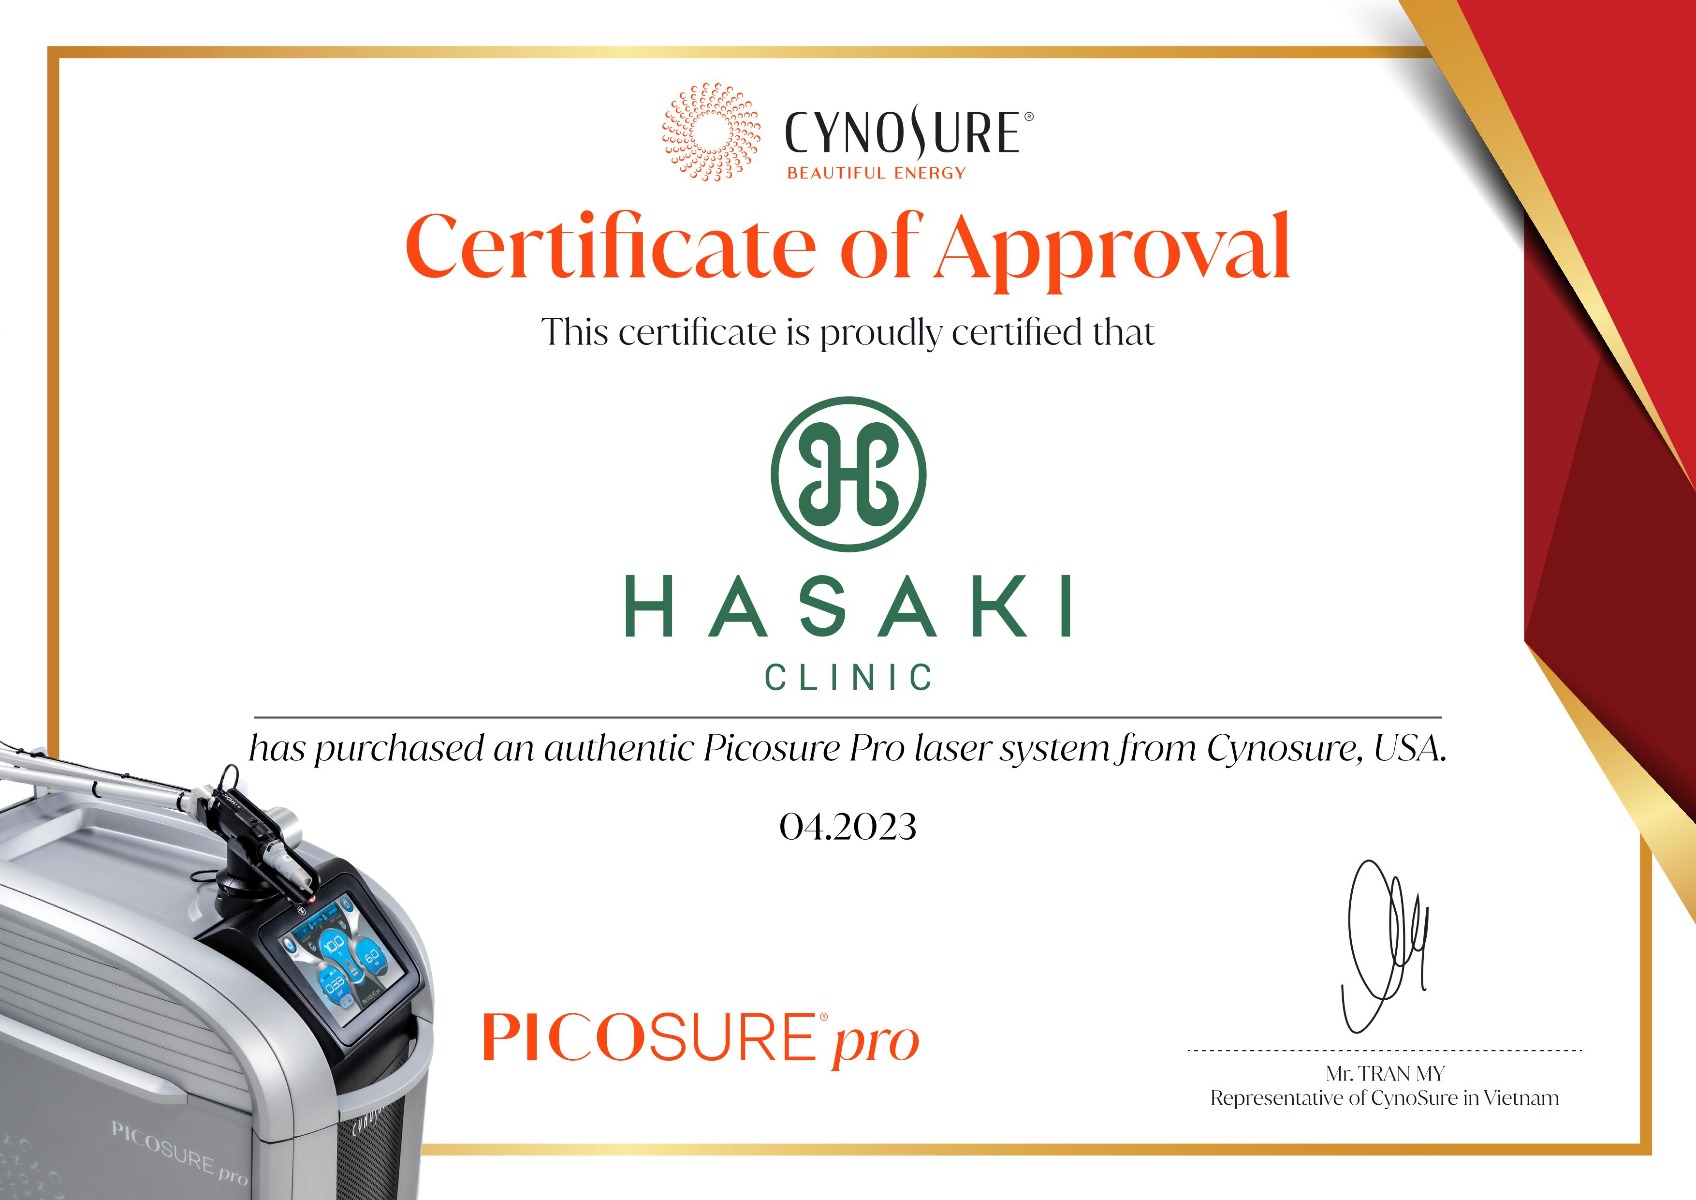 Chứng nhận Hasaki Clinic sở hữu công nghệ Picosure Pro